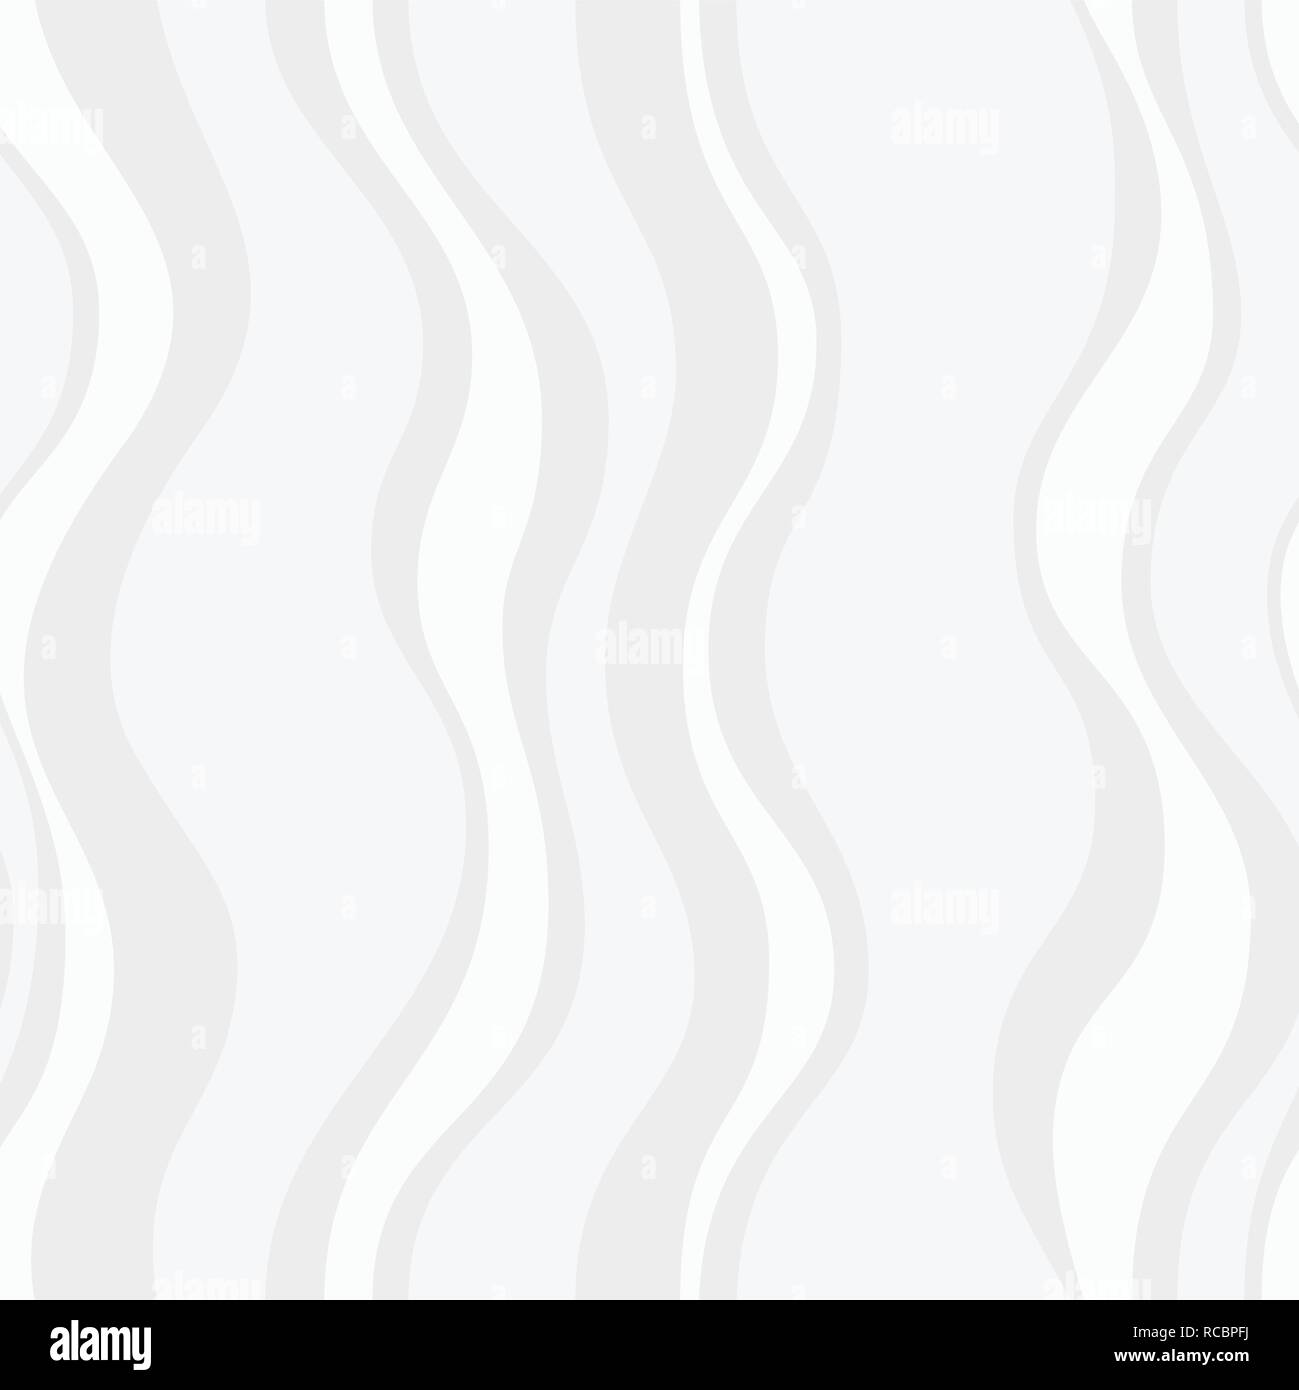 Zusammenfassung nahtlose Muster mit gewellten Streifen. Weiße und graue geometrische Struktur. Flache Bauform. Vector Hintergrund. Stock Vektor